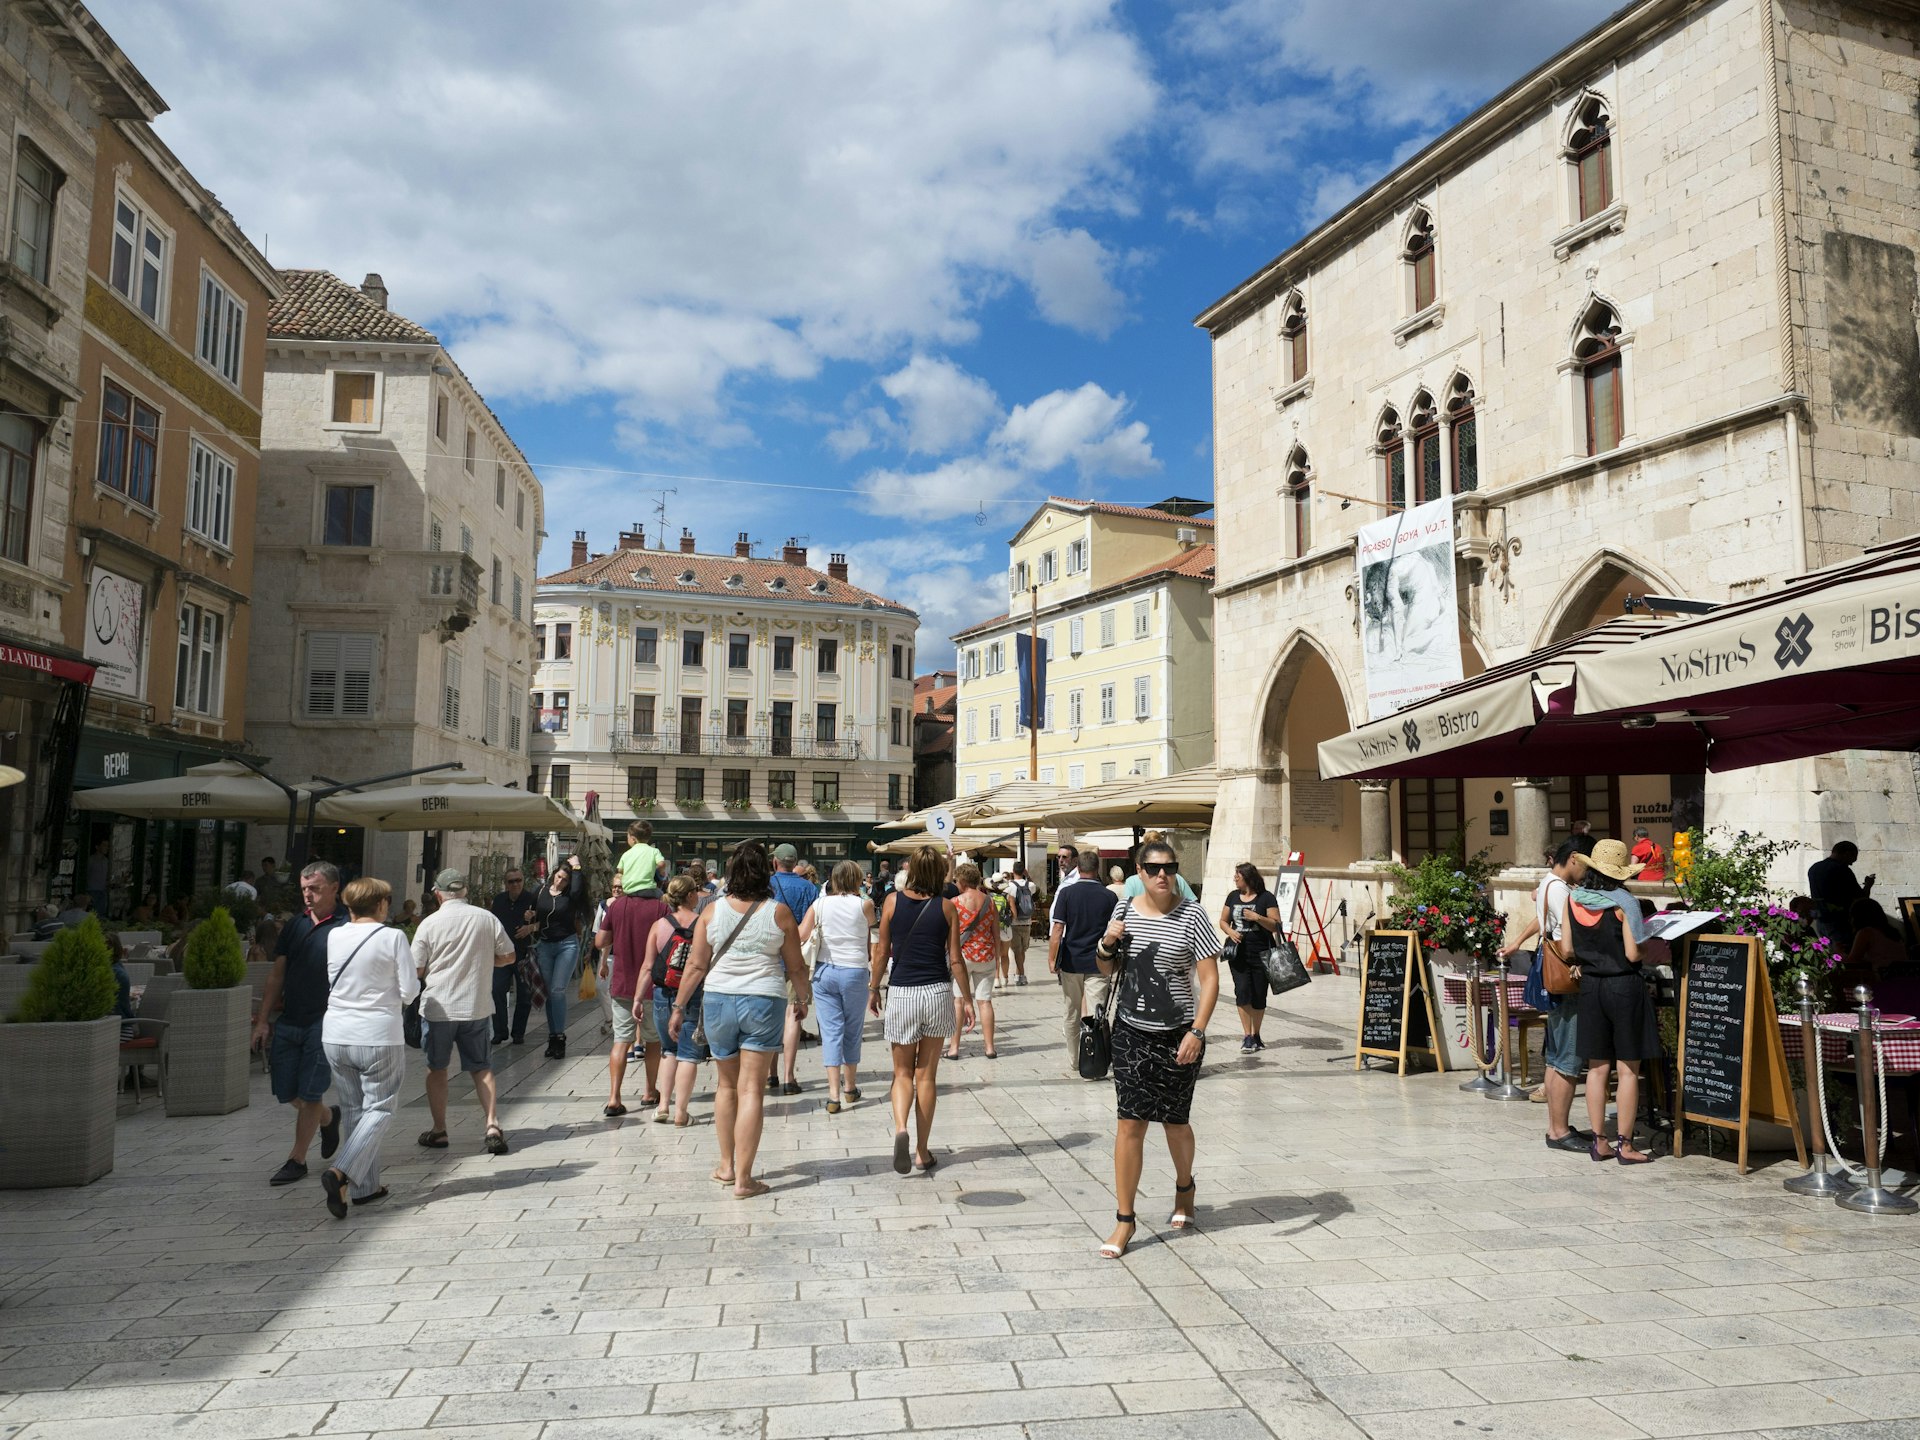 Narodni Trg Square in the Old Town of Split